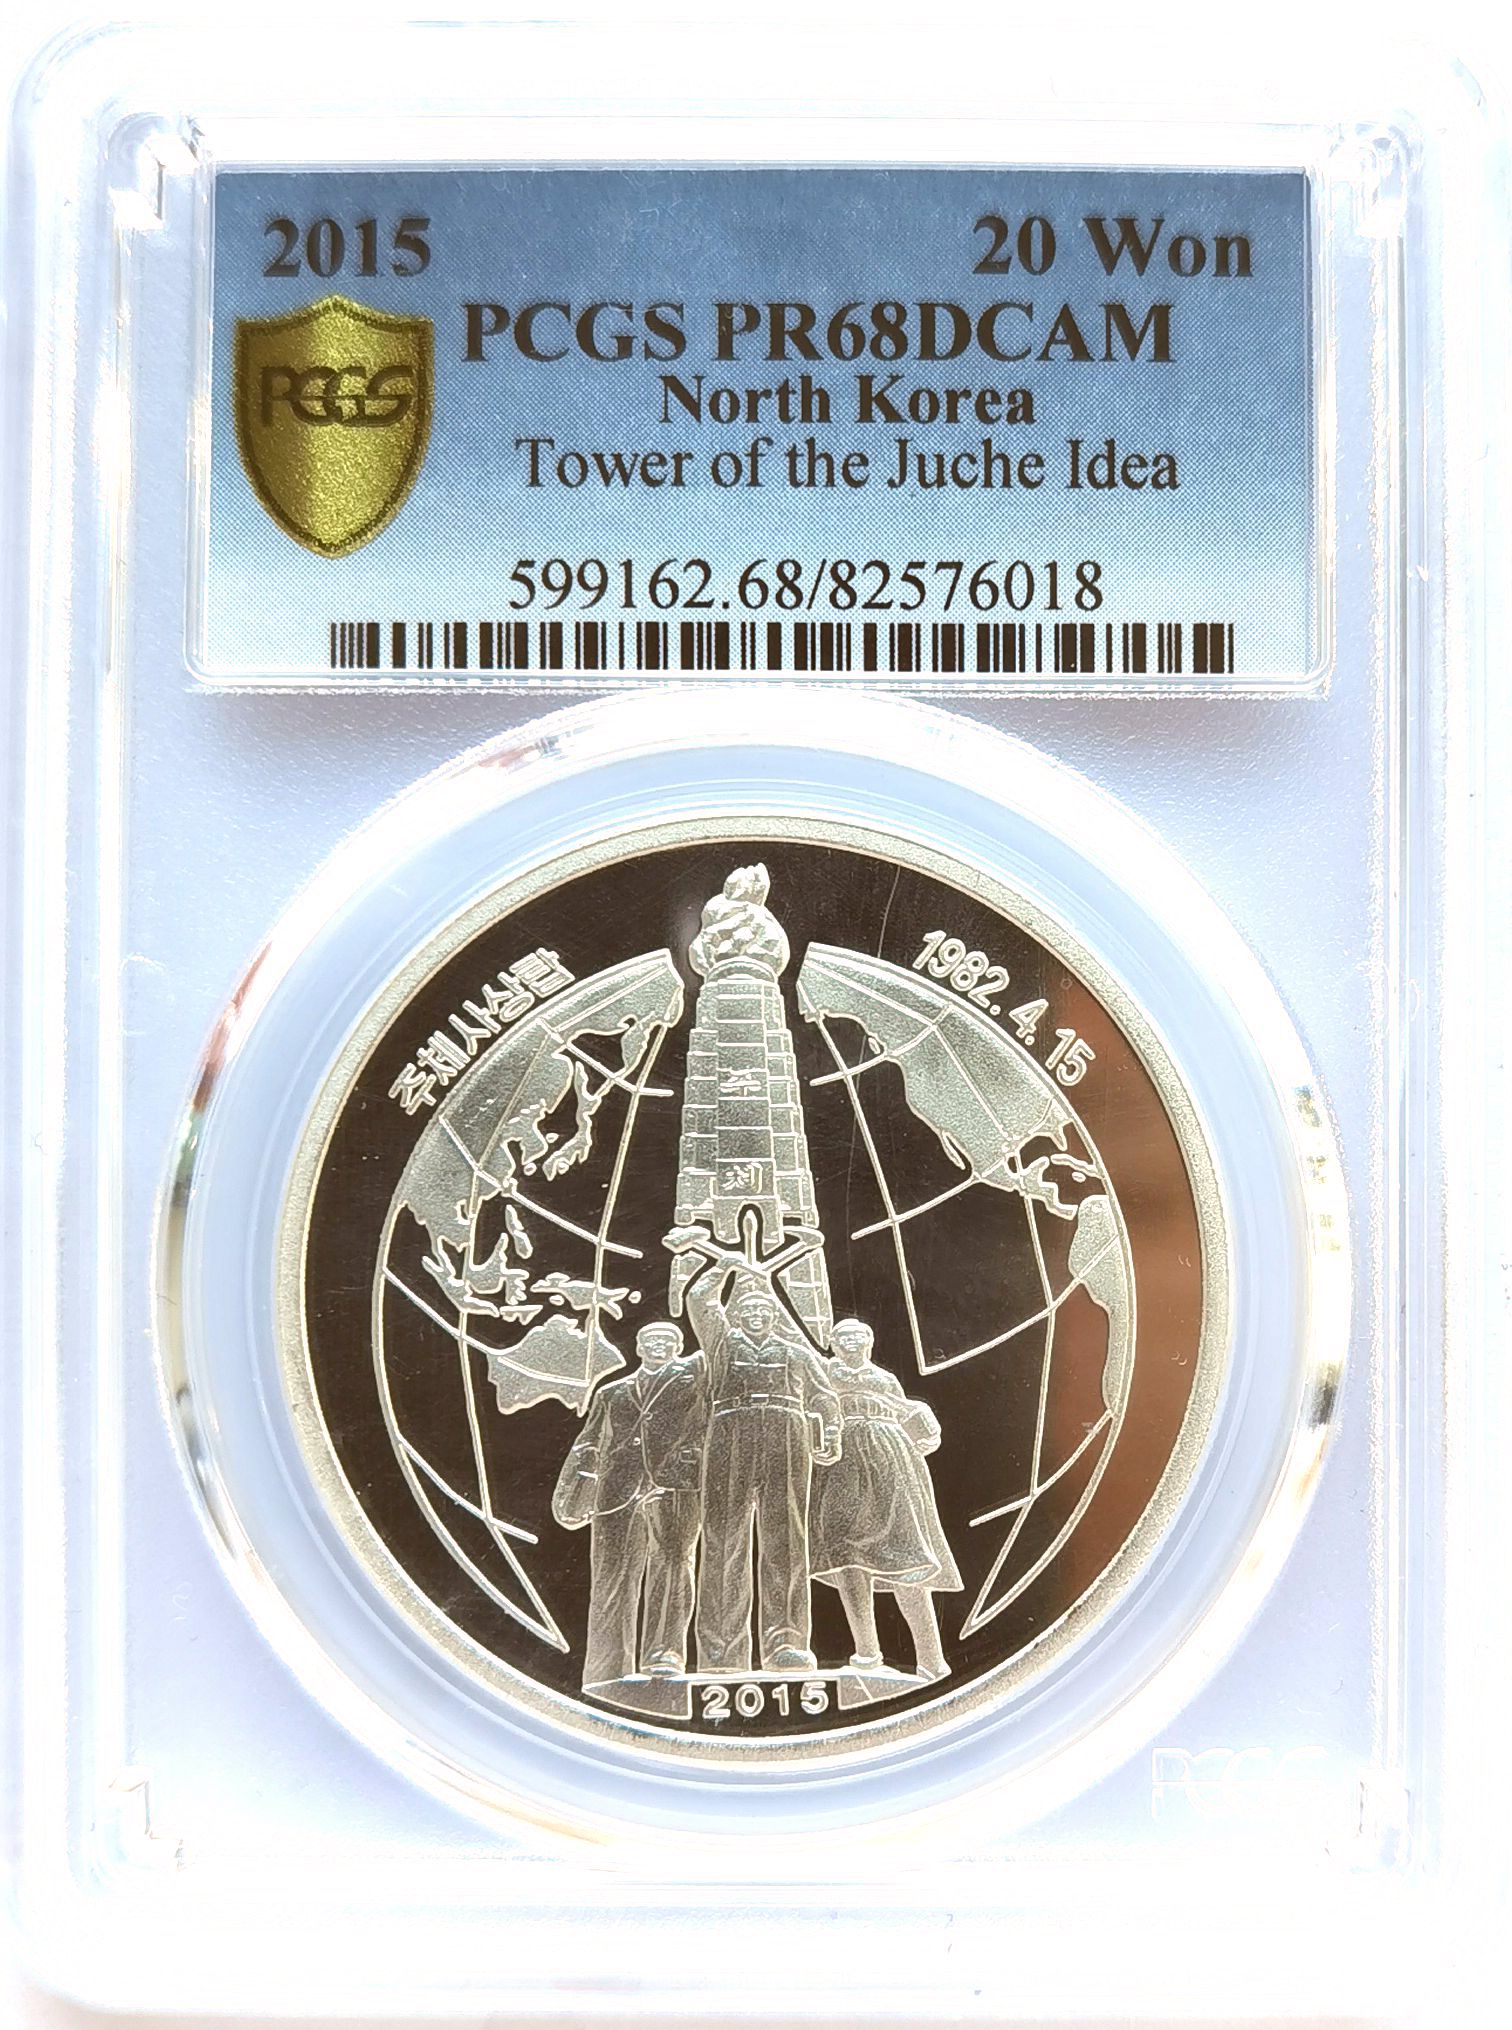 L3448, PCGS PR68, Korea "Tower of Juche Idea" Silver Coin 1 oz. 2015